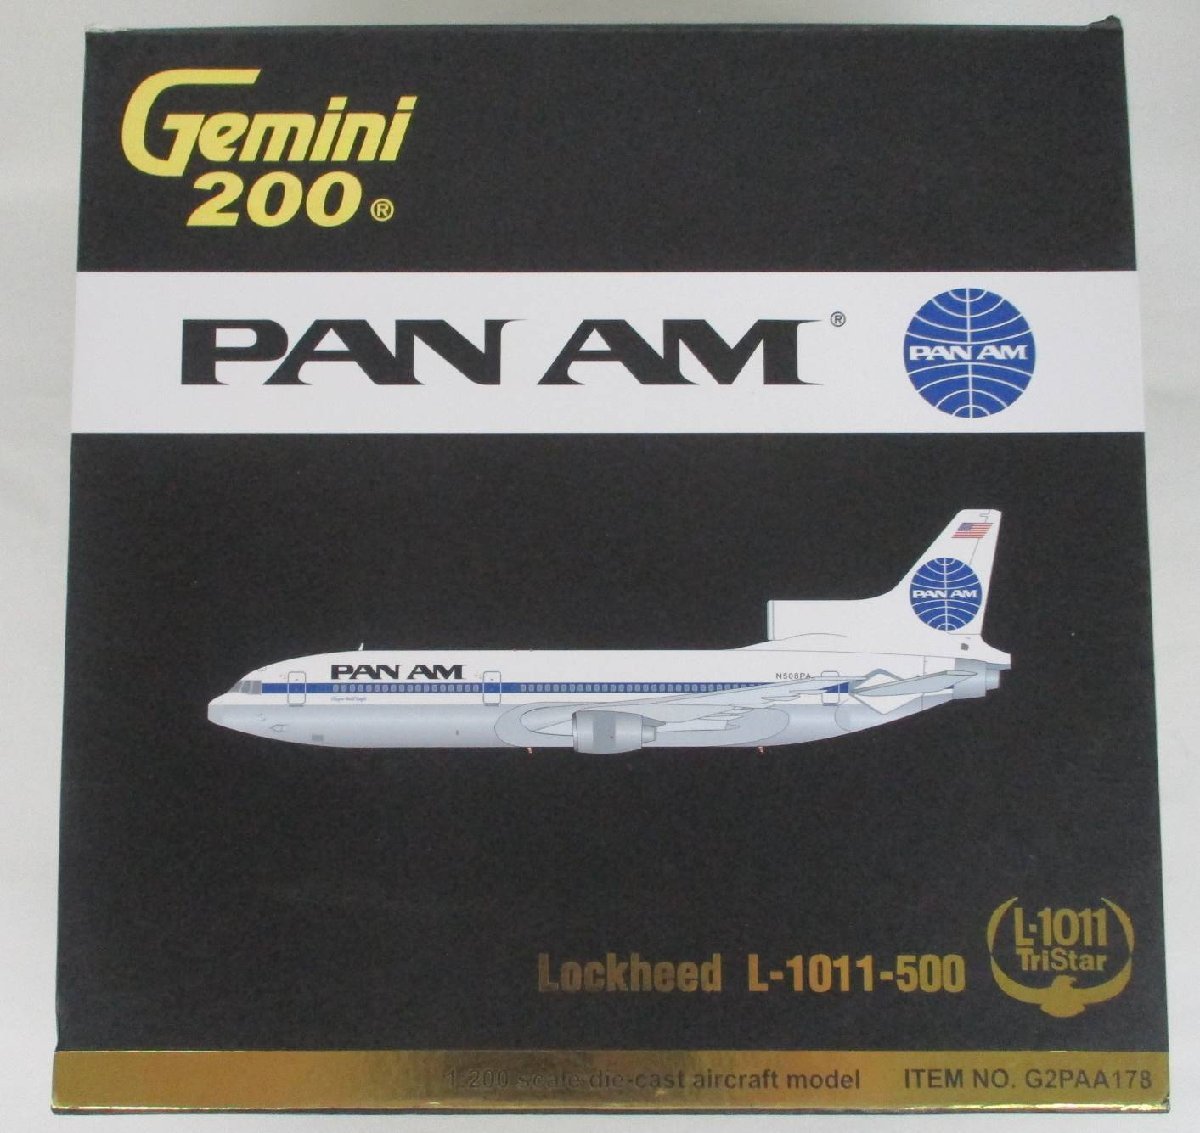 お買い得お得Gemini 200 1/200 PAN AM Lockheed L-1011-500 [G2PAA178]det052308 民間航空機